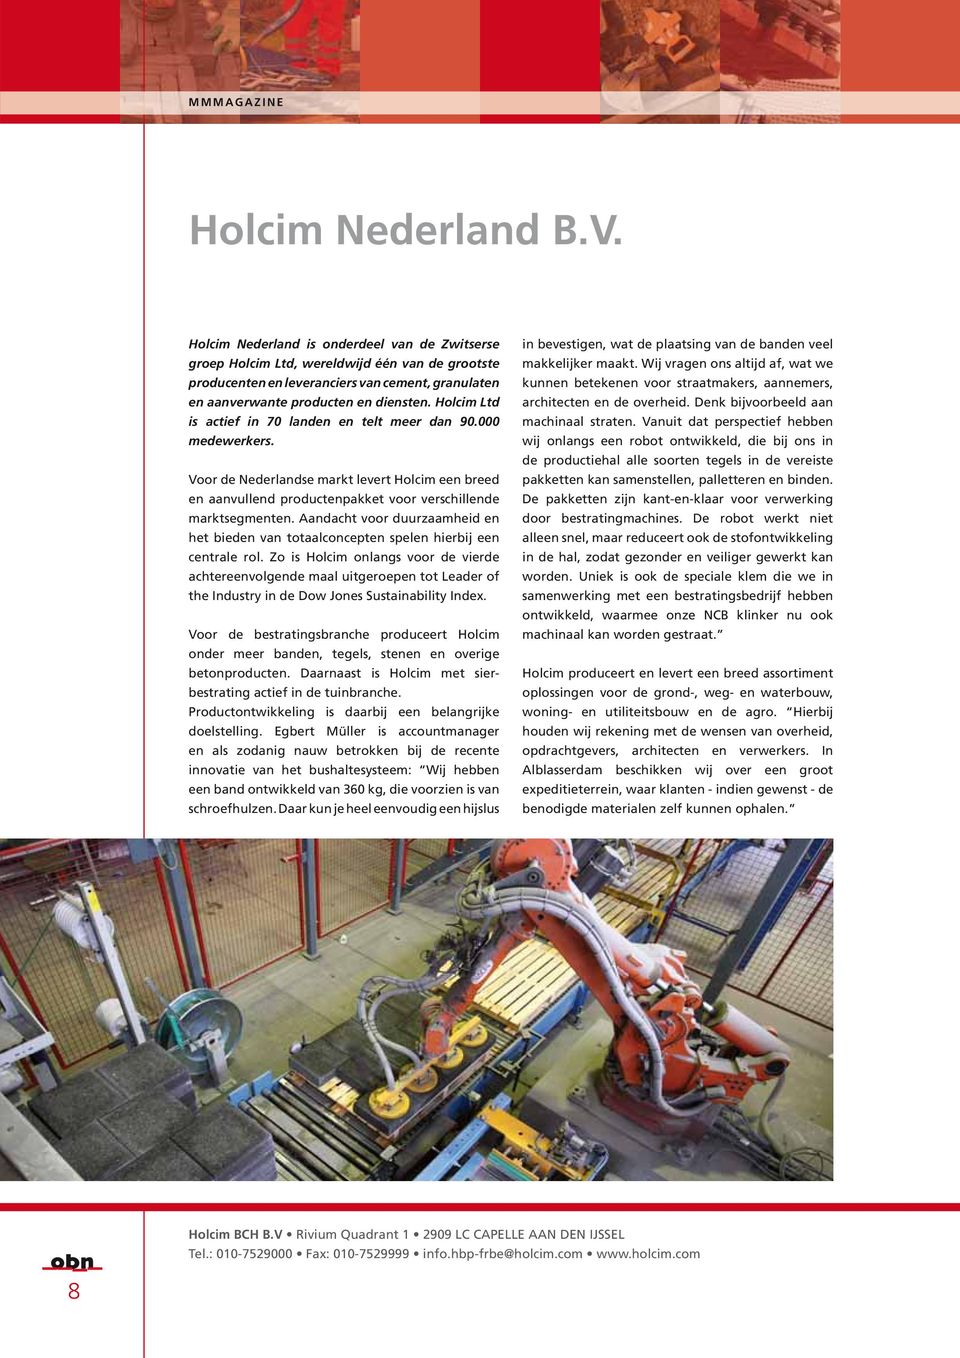 Holcim Ltd is actief in 70 landen en telt meer dan 90.000 medewerkers. Voor de Nederlandse markt levert Holcim een breed en aanvullend productenpakket voor verschillende marktsegmenten.